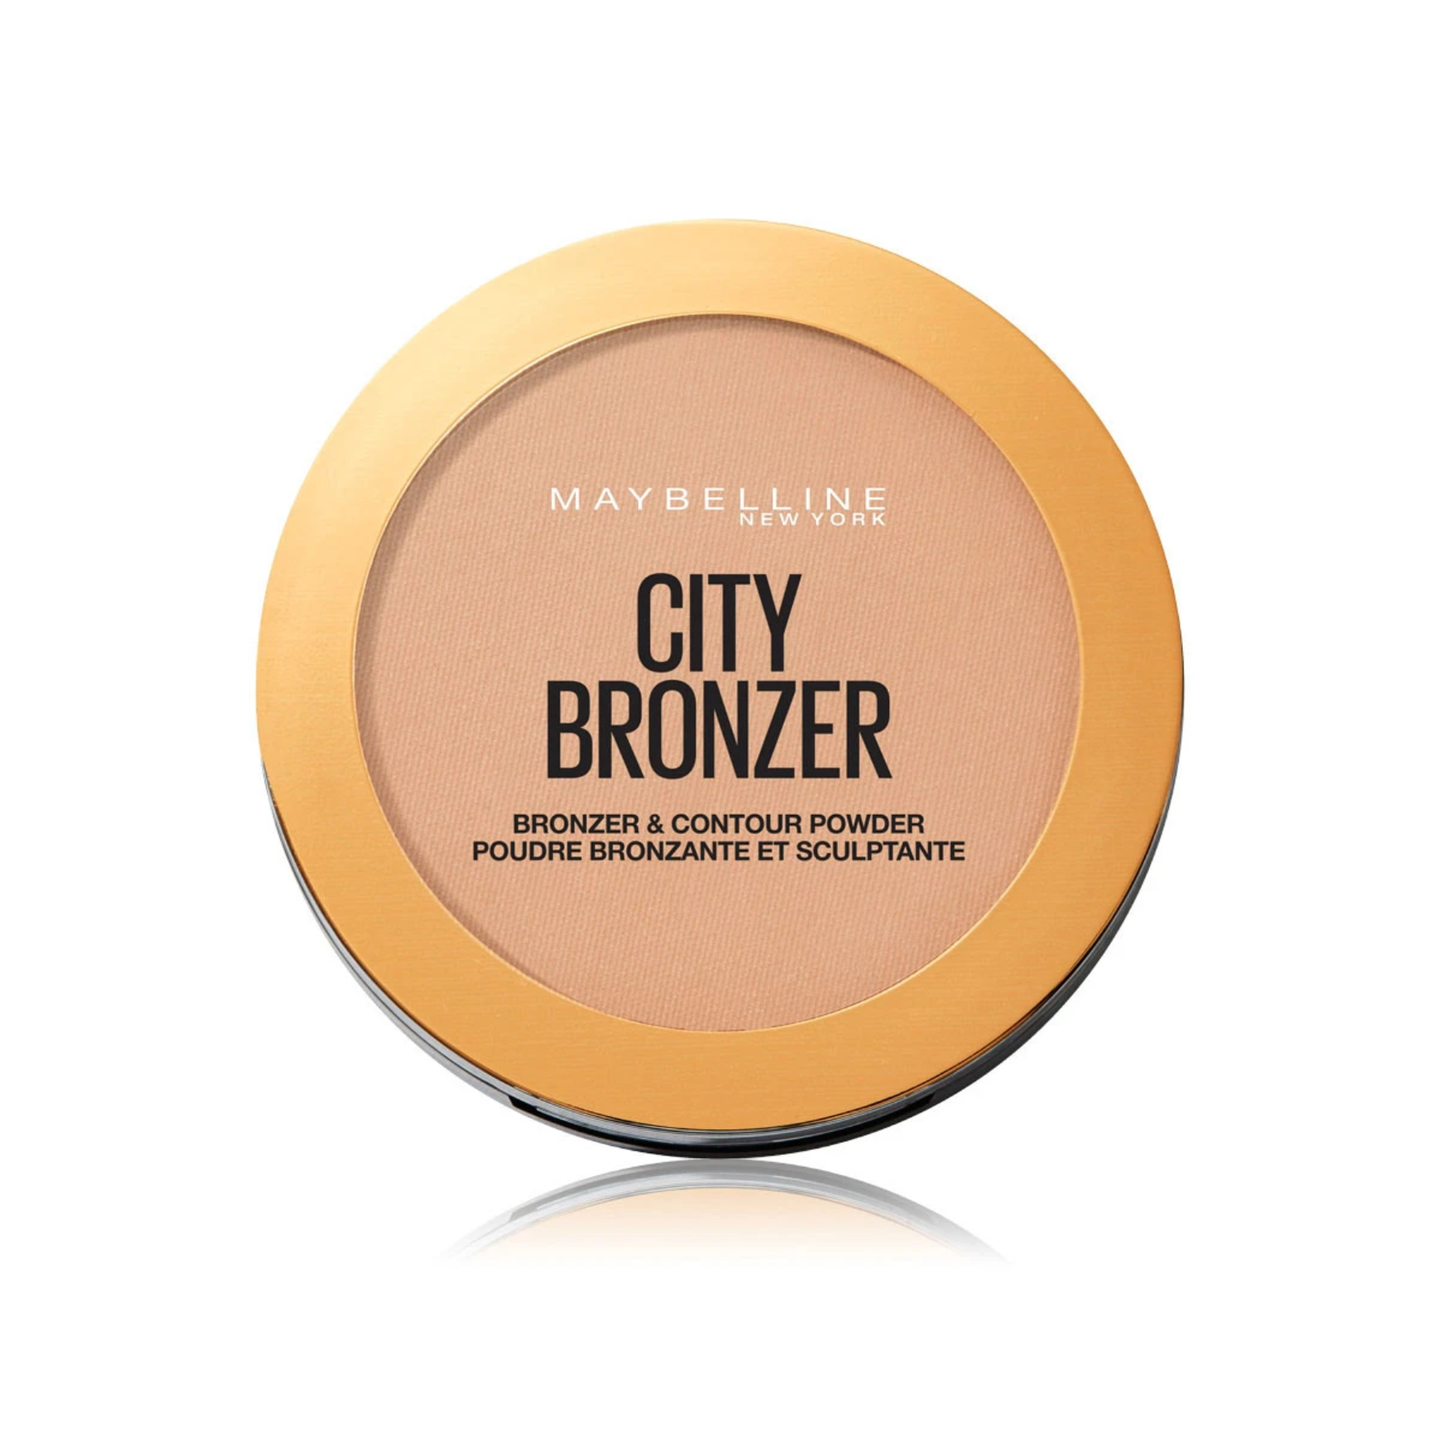 Der "City Bronzer" von Maybelline New York ist ein echter Klassiker. Vor allem helleren Hauttypen verleiht das Produkt einen frischen und gesunden Teint. Und der Preis? Mit schlappen sieben Euro wirklich unschlagbar.